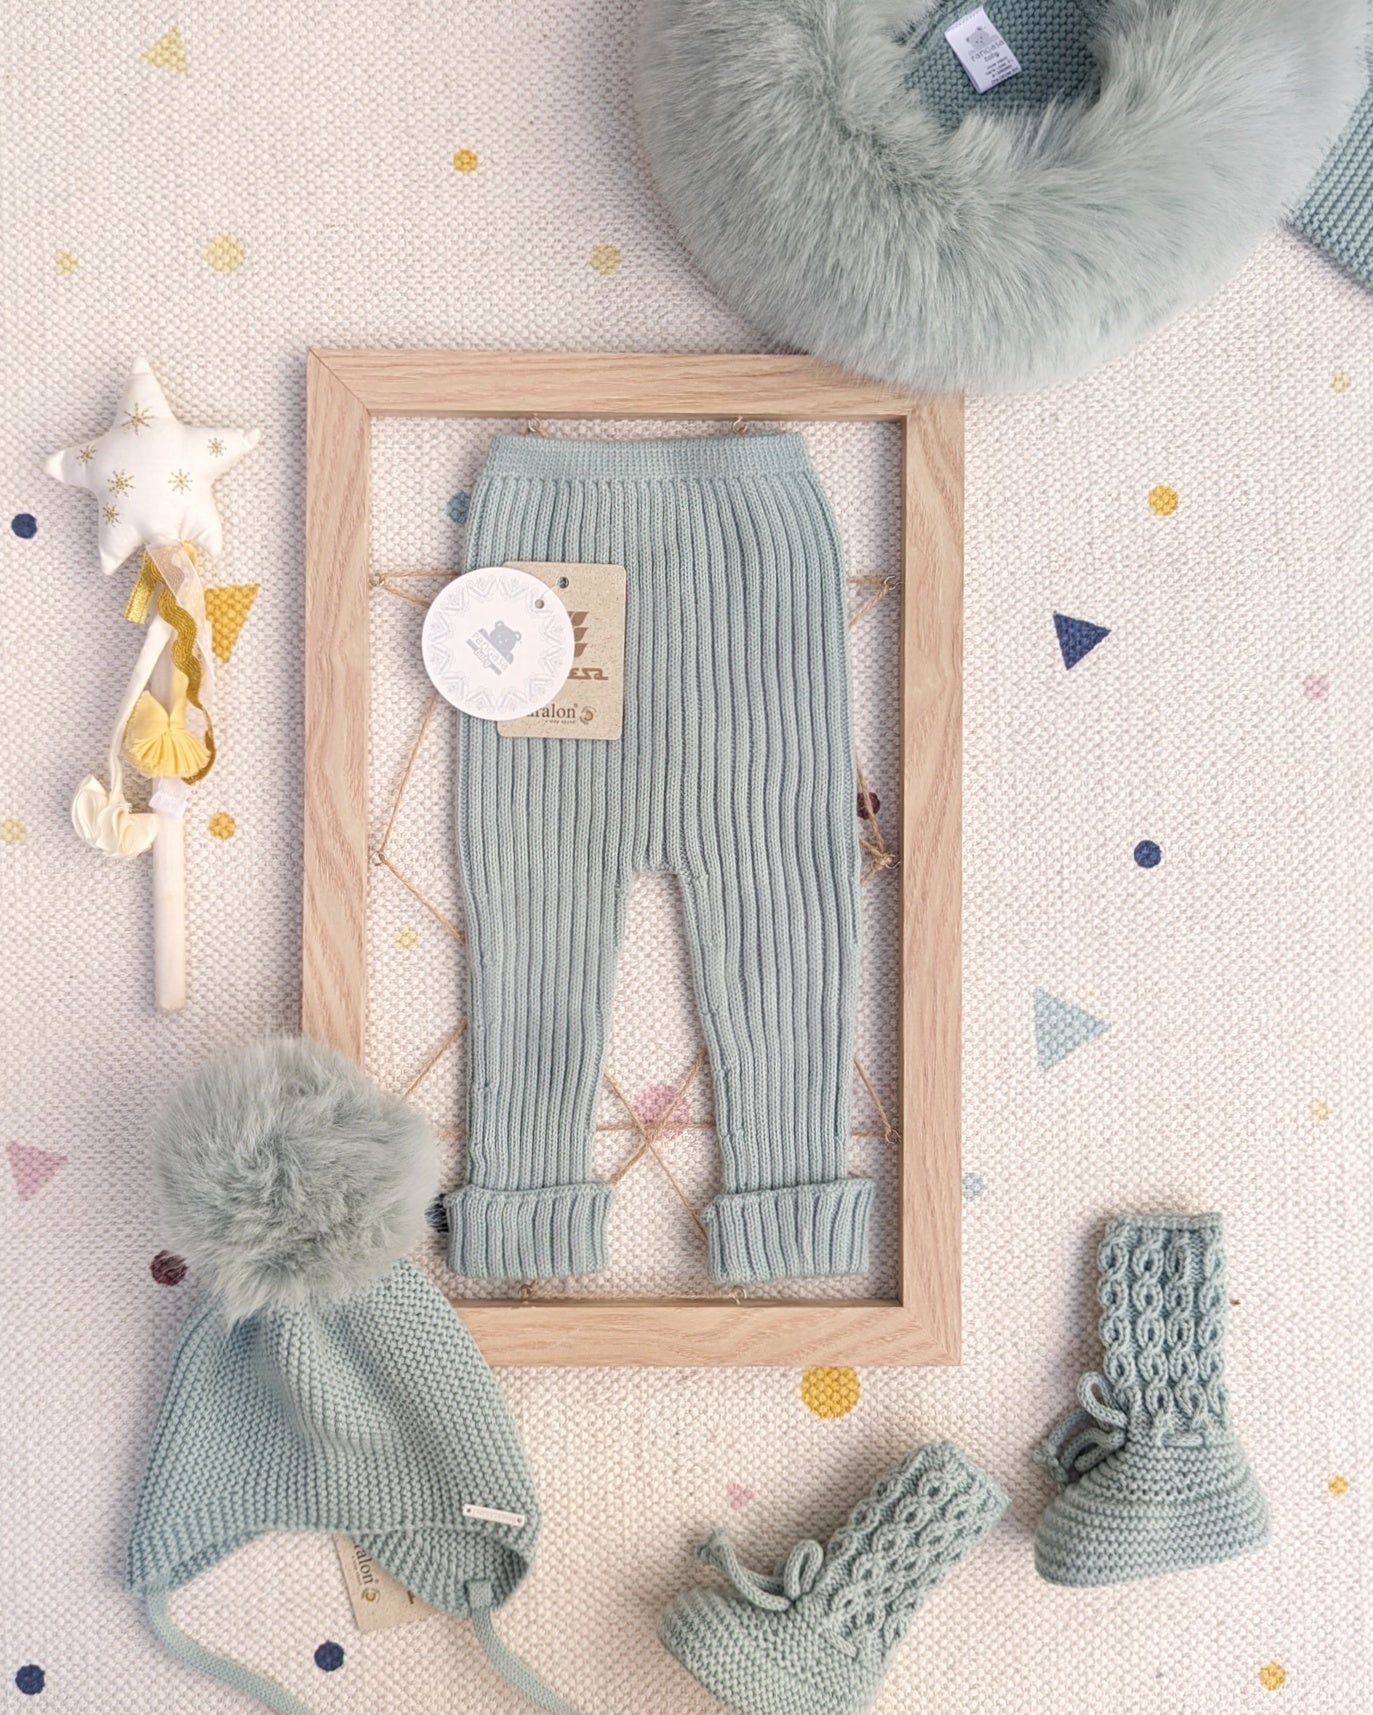 Leotardo Verde Empolvado - Pangasa Baby – Tienda Grumetes Moda Infantil